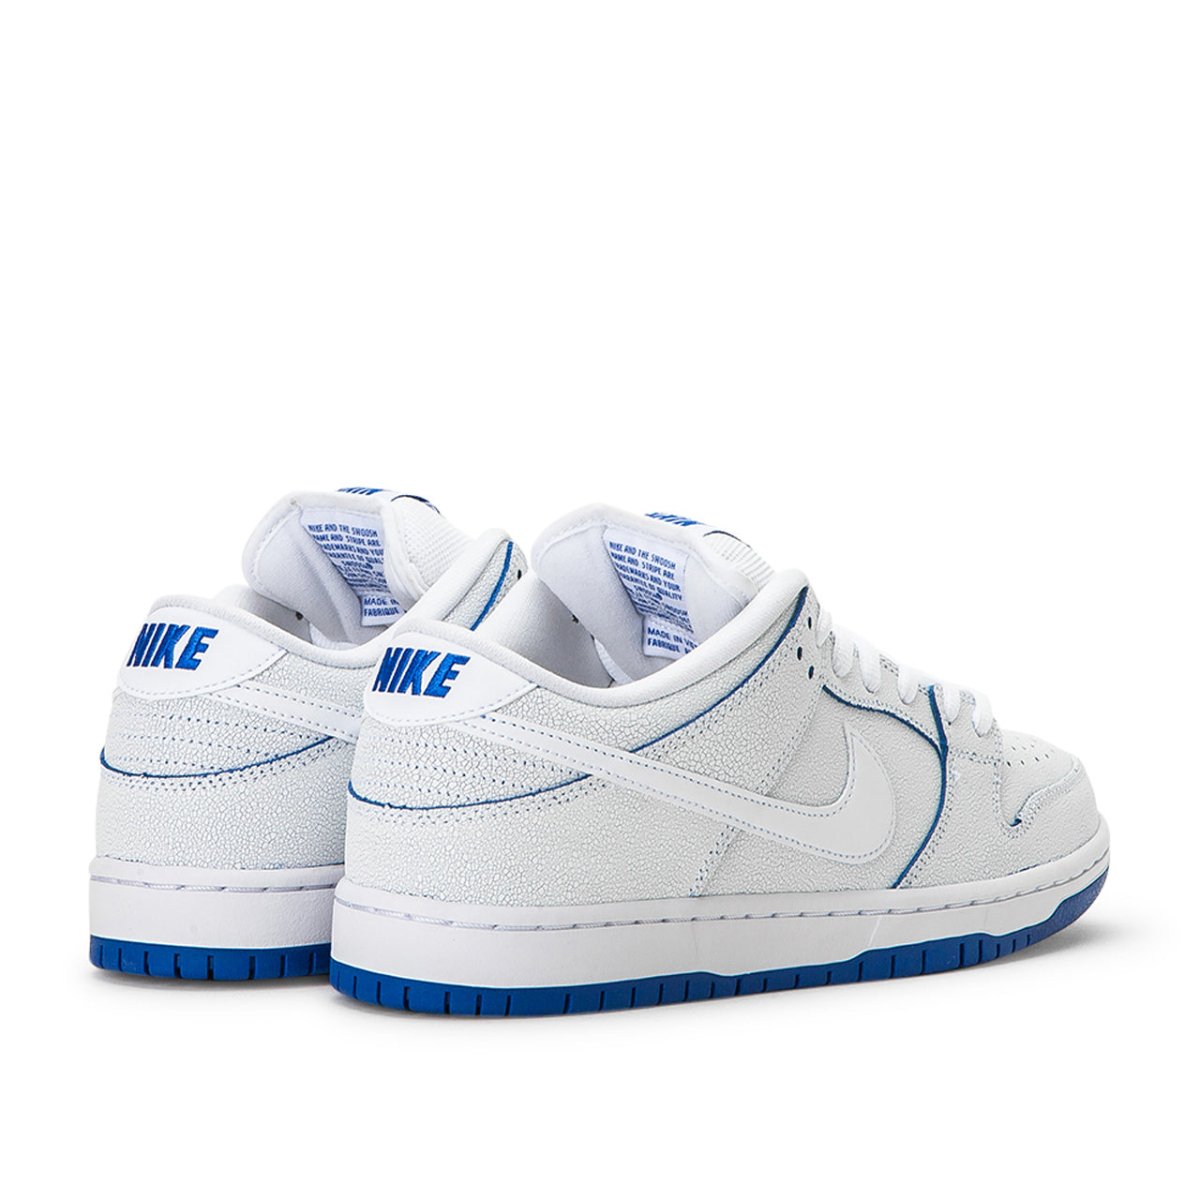 Nike SB Dunk Low Pro Premium (White / Blue) CJ6884-100 – Allike Store